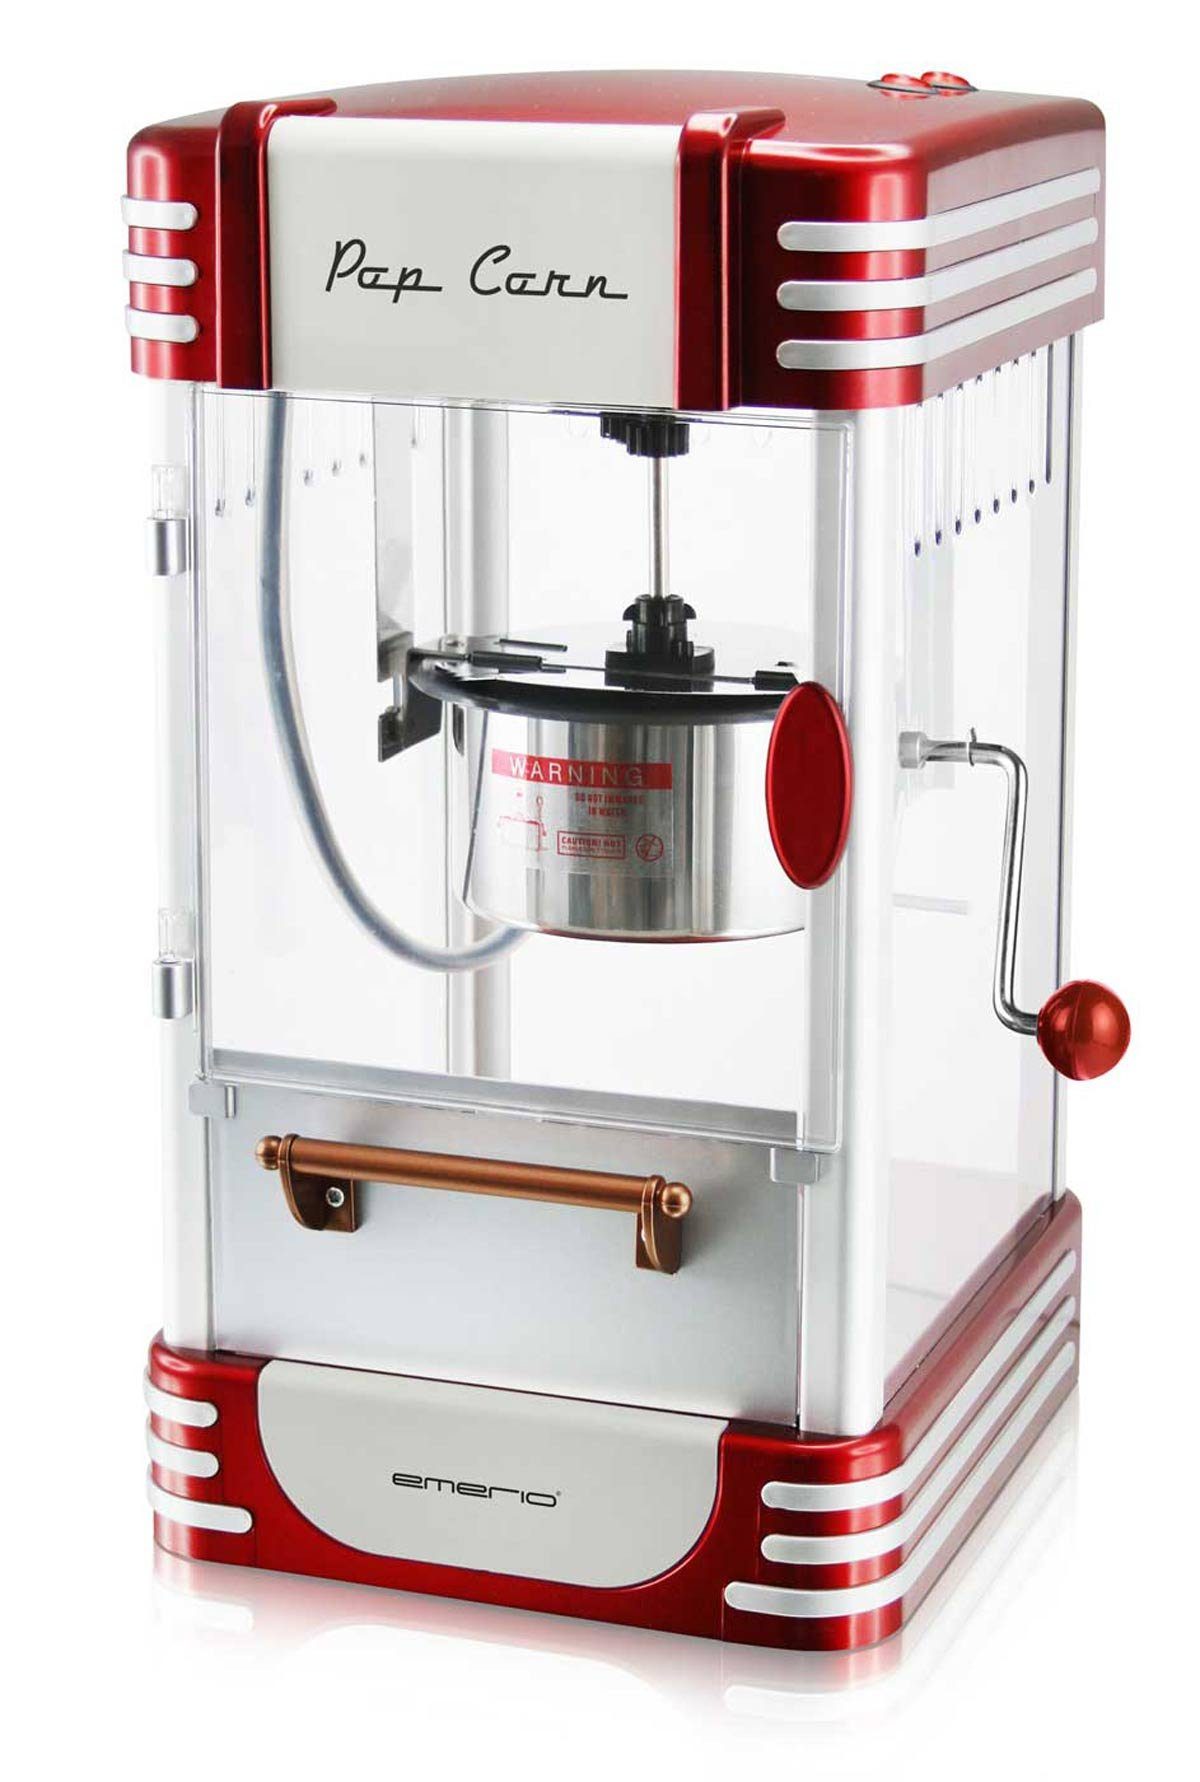 POM-120650 Retro-Design Popcornmaschine Popcorn-Maker im Emerio